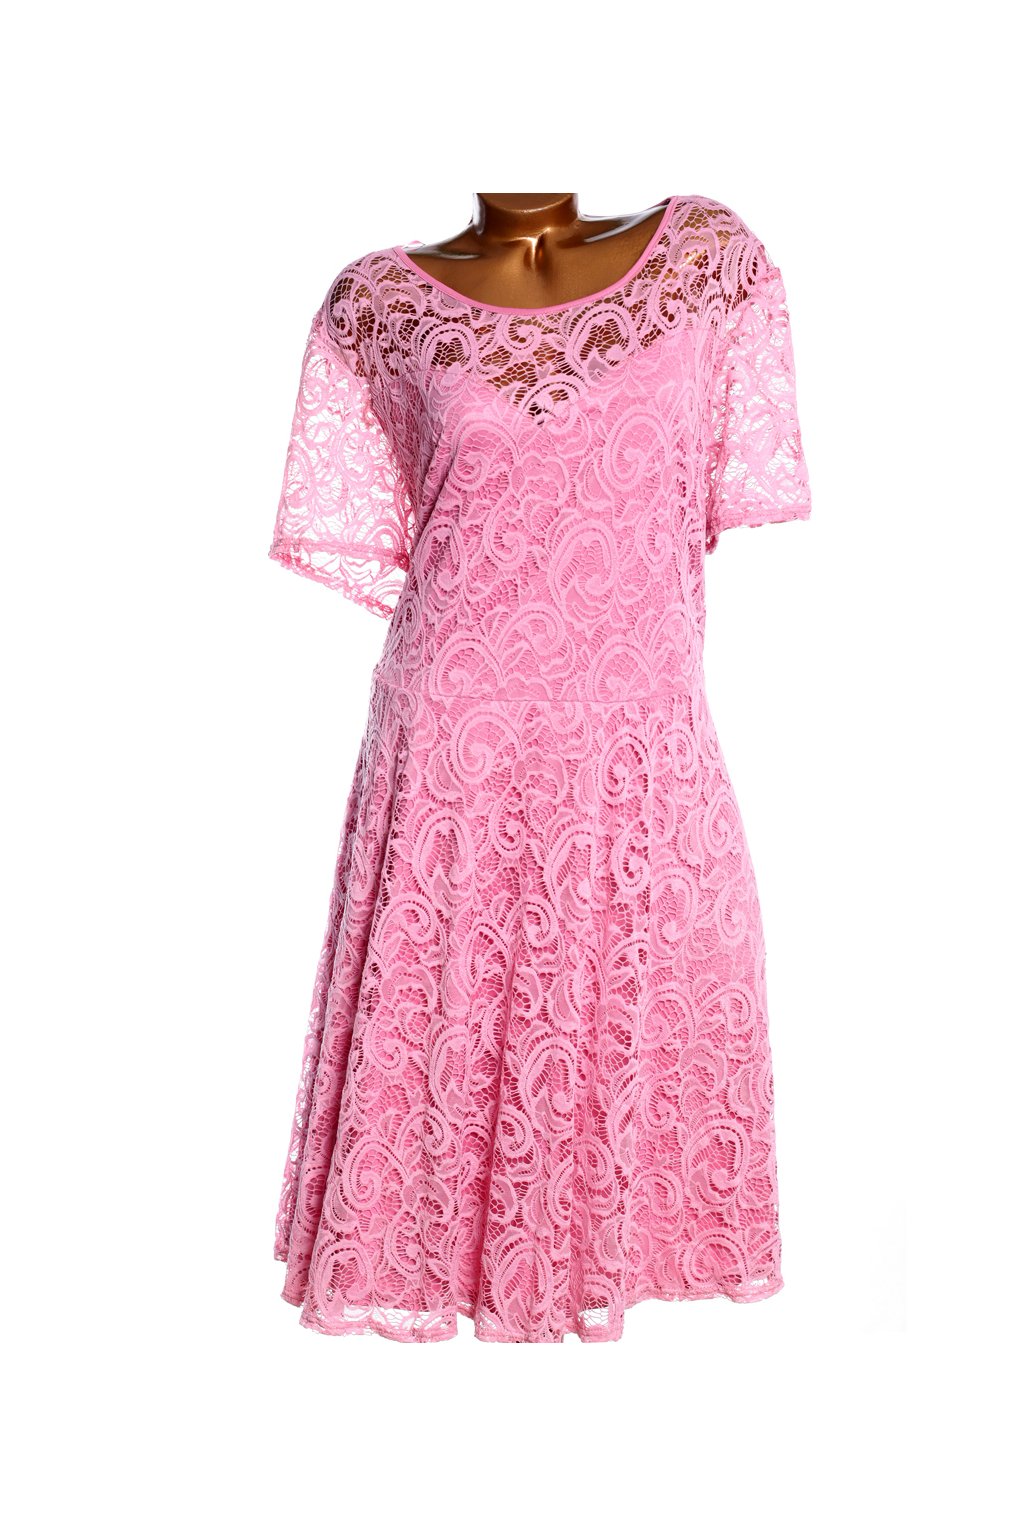 Dámské růžové krajkové šaty / YOURS / XXXXL+ (60) / ANGLIE